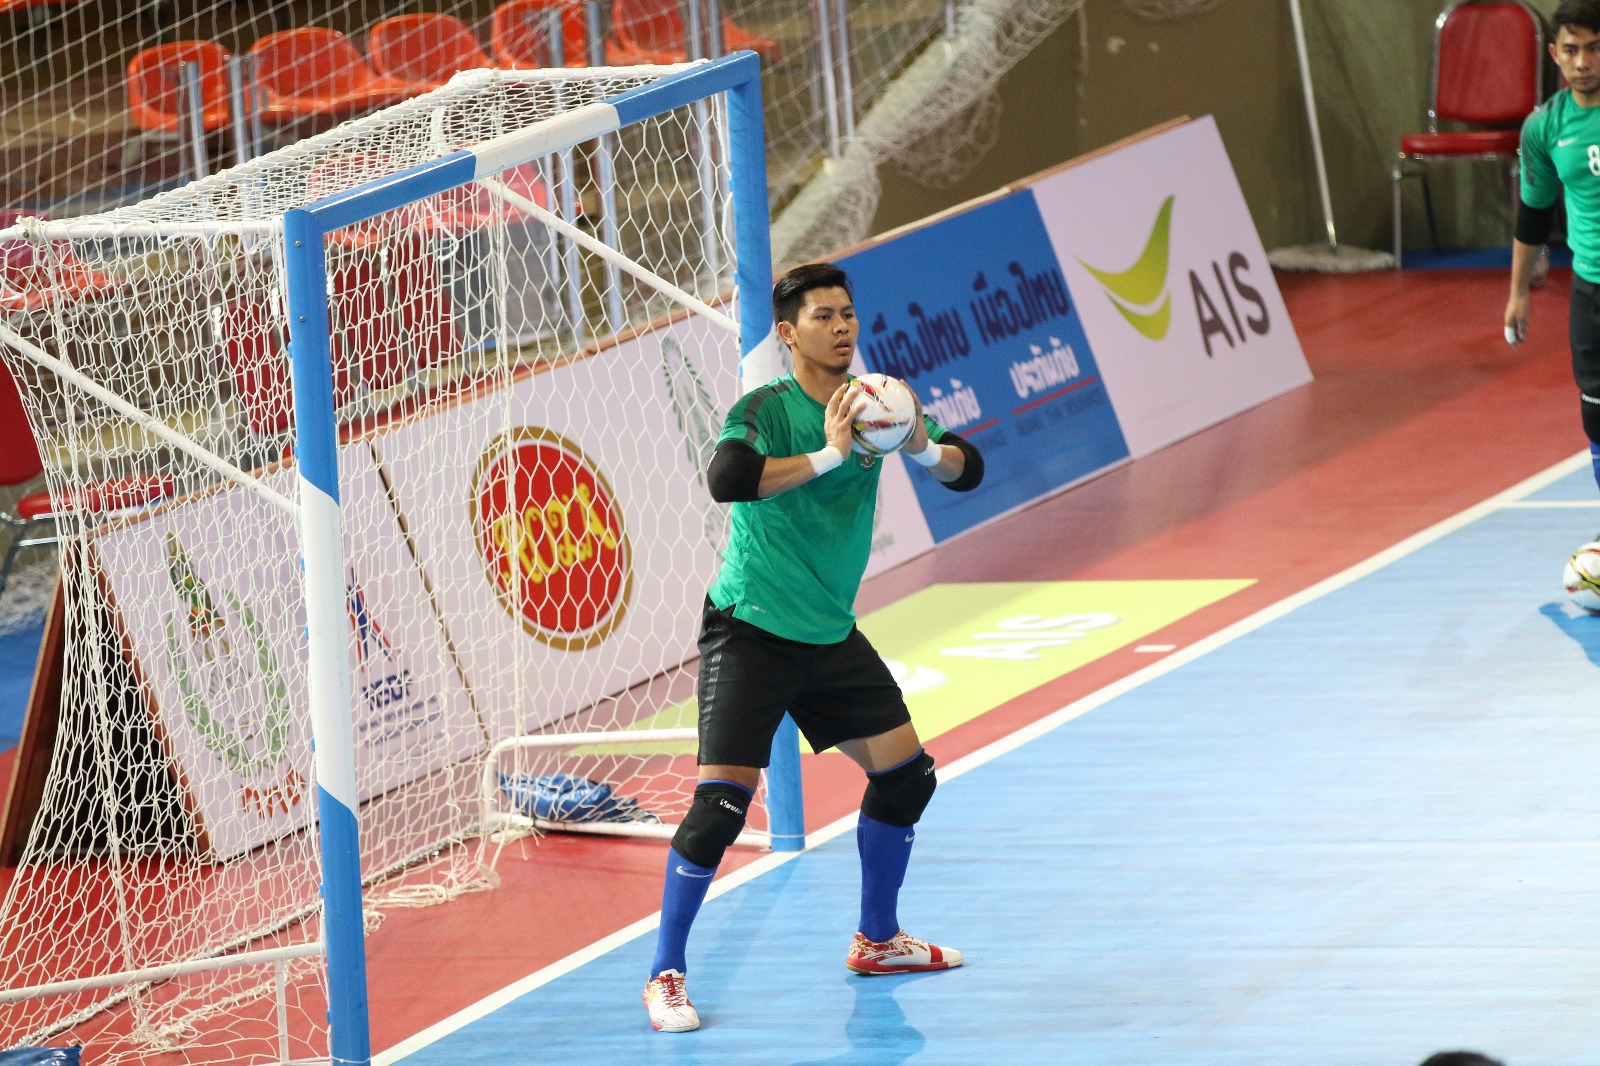  72 Kata Kata  Bijak Buat Kiper  Futsal  Kakatabijak